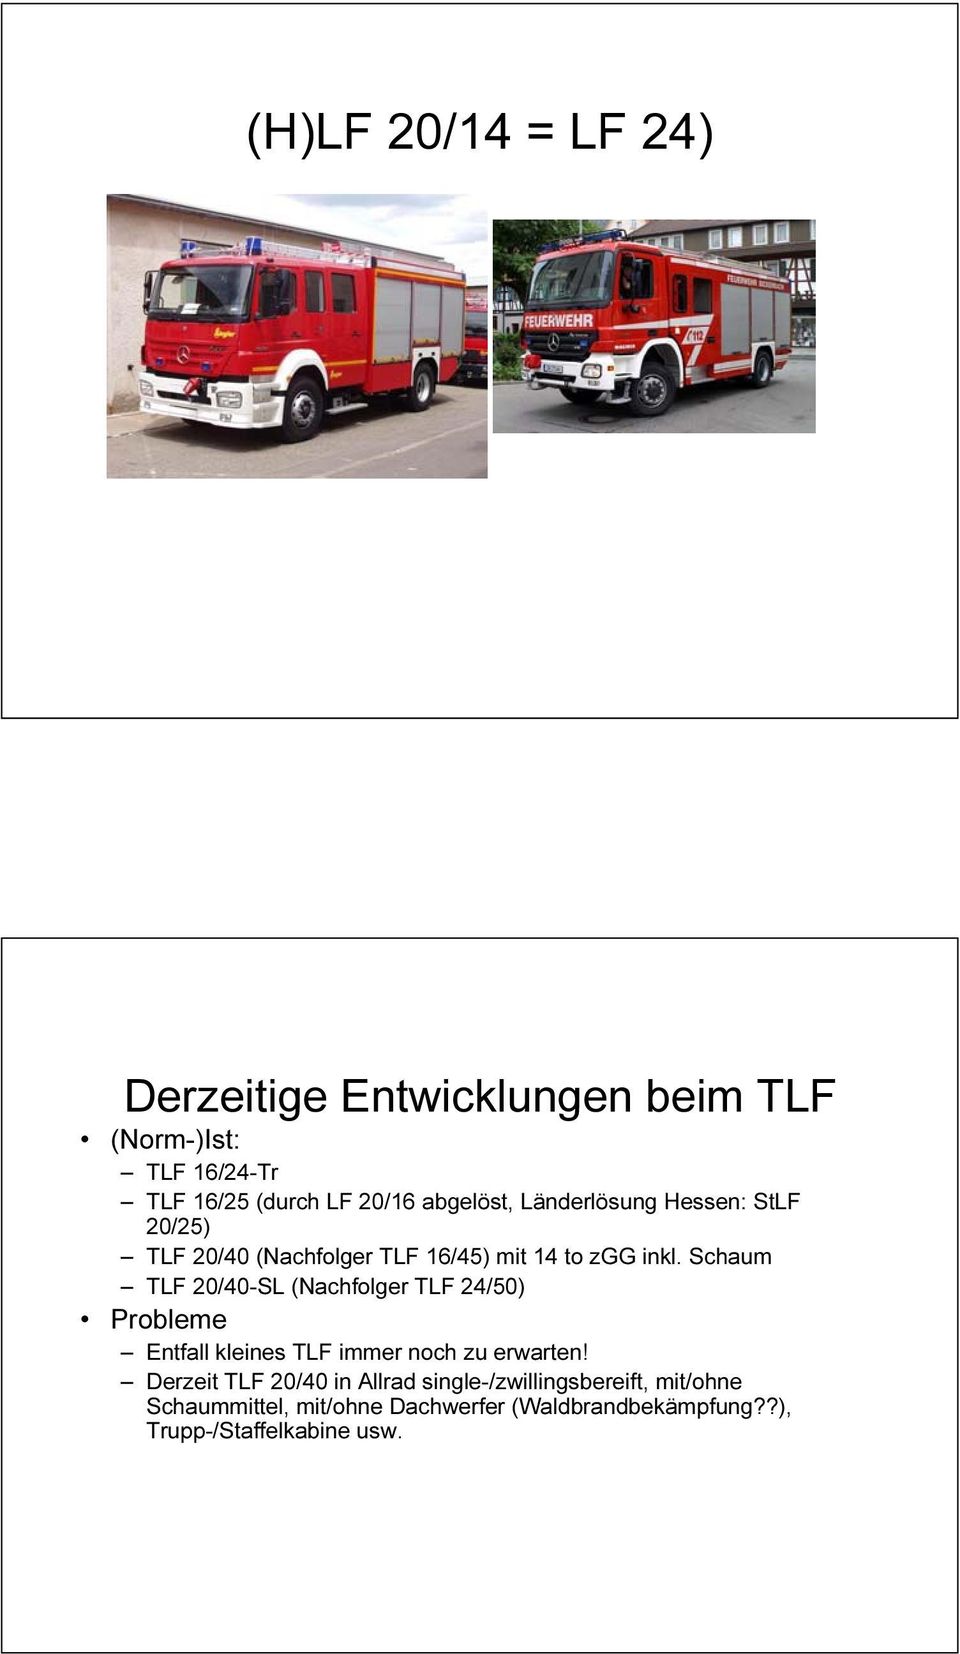 Schaum TLF 20/40-SL (Nachfolger TLF 24/50) Probleme Entfall kleines TLF immer noch zu erwarten!